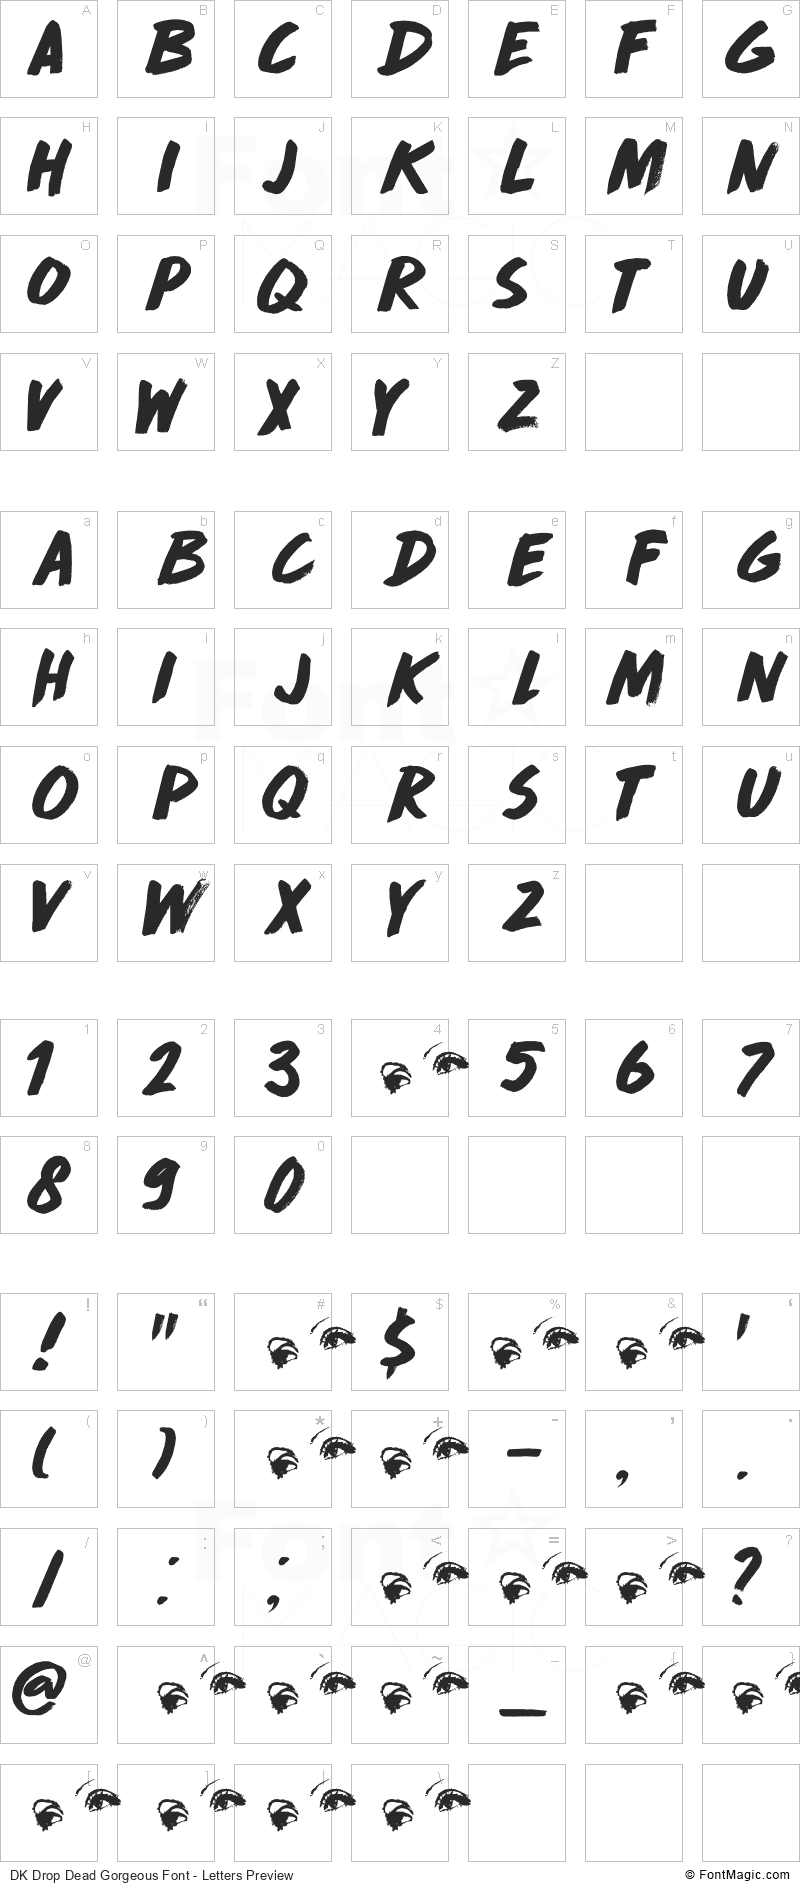 DK Drop Dead Gorgeous Font - All Latters Preview Chart